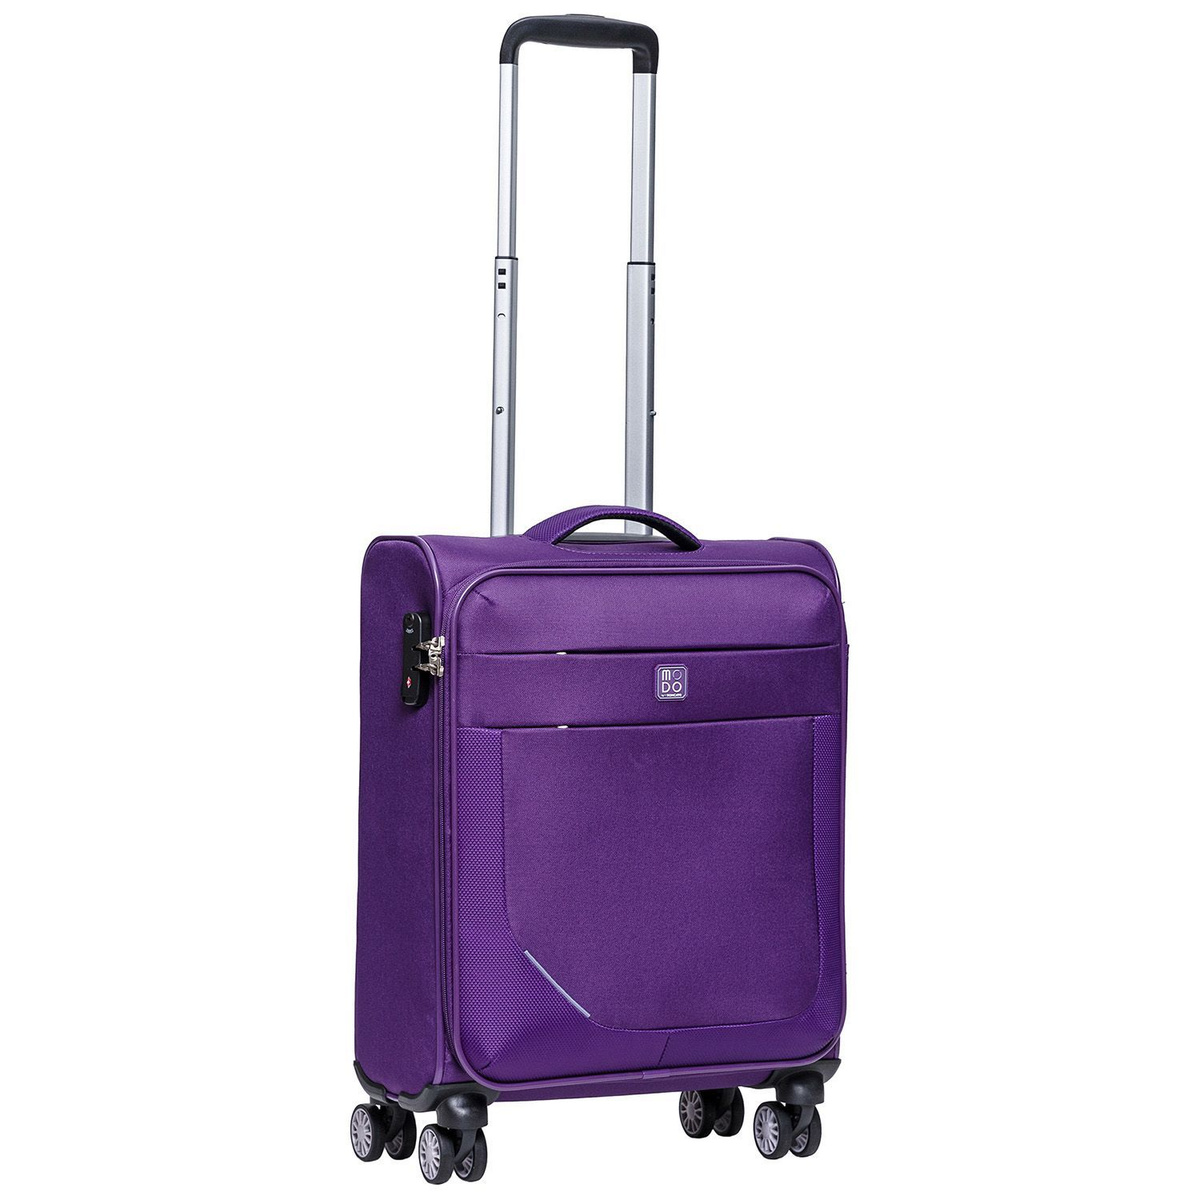 Размер чемодана: 40x55x20 см Вес чемодана: 2,7 кг Объём чемодана: 42 л